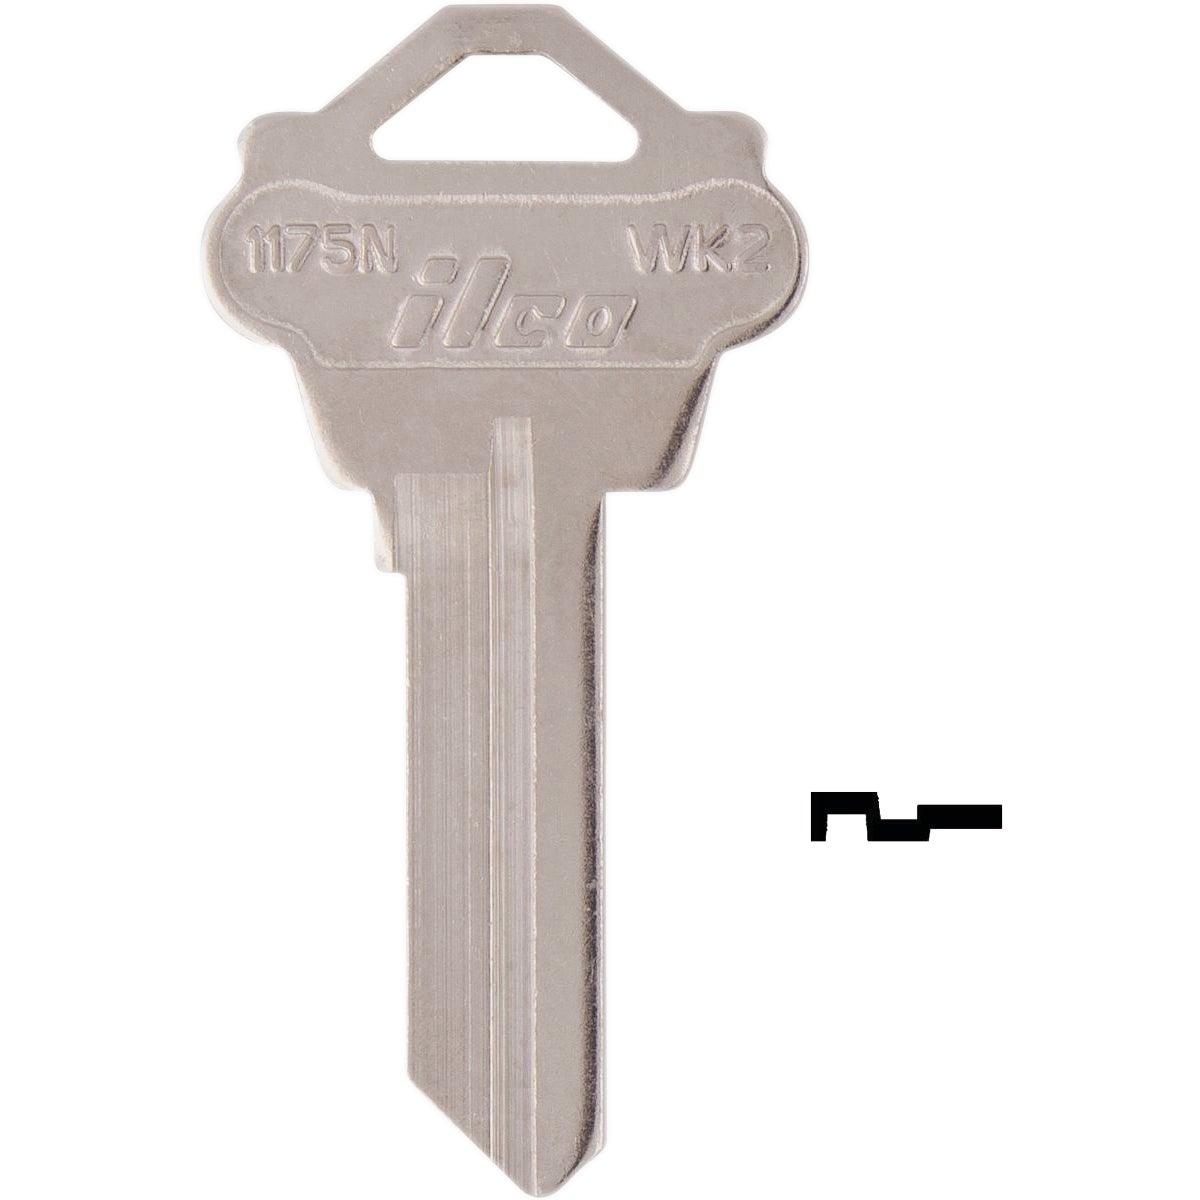 ILCO Weslock Lockset Key Blank 1175N (10-Pack)